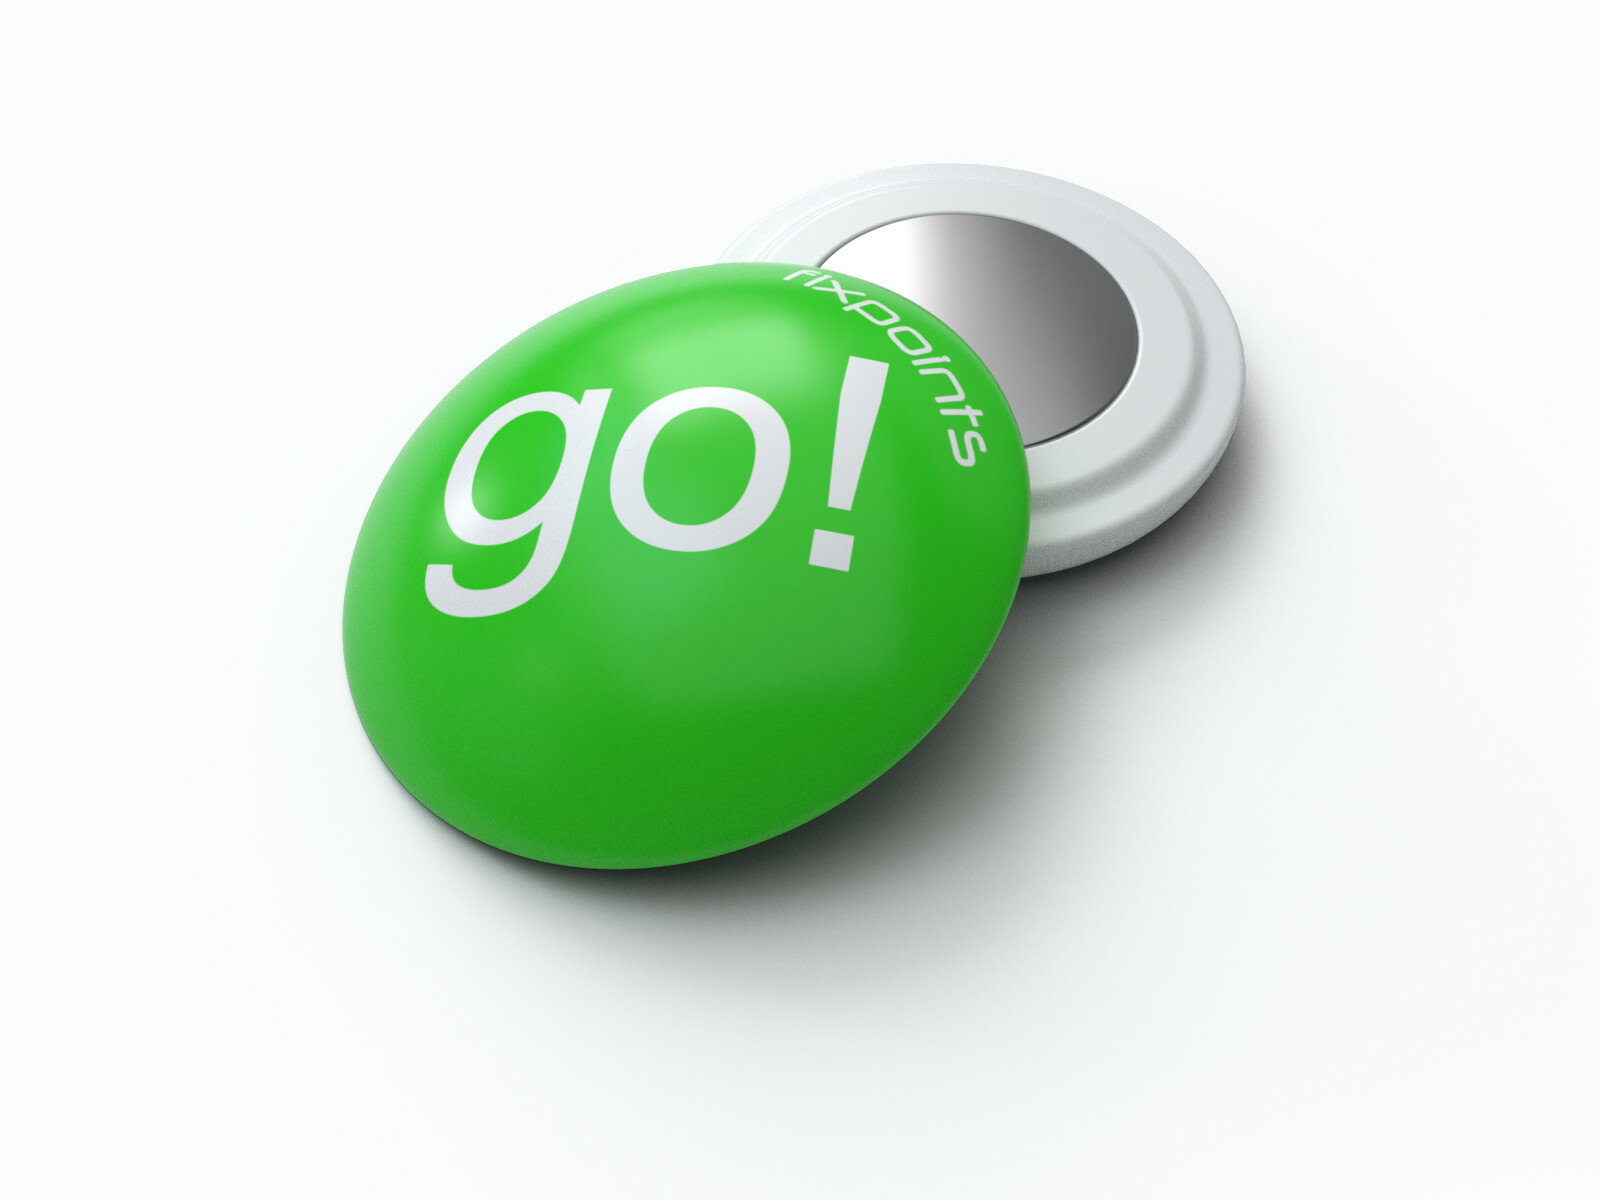 騎跑泳者-德國騛點/Fixpoints號碼布磁扣 (綠色go!)